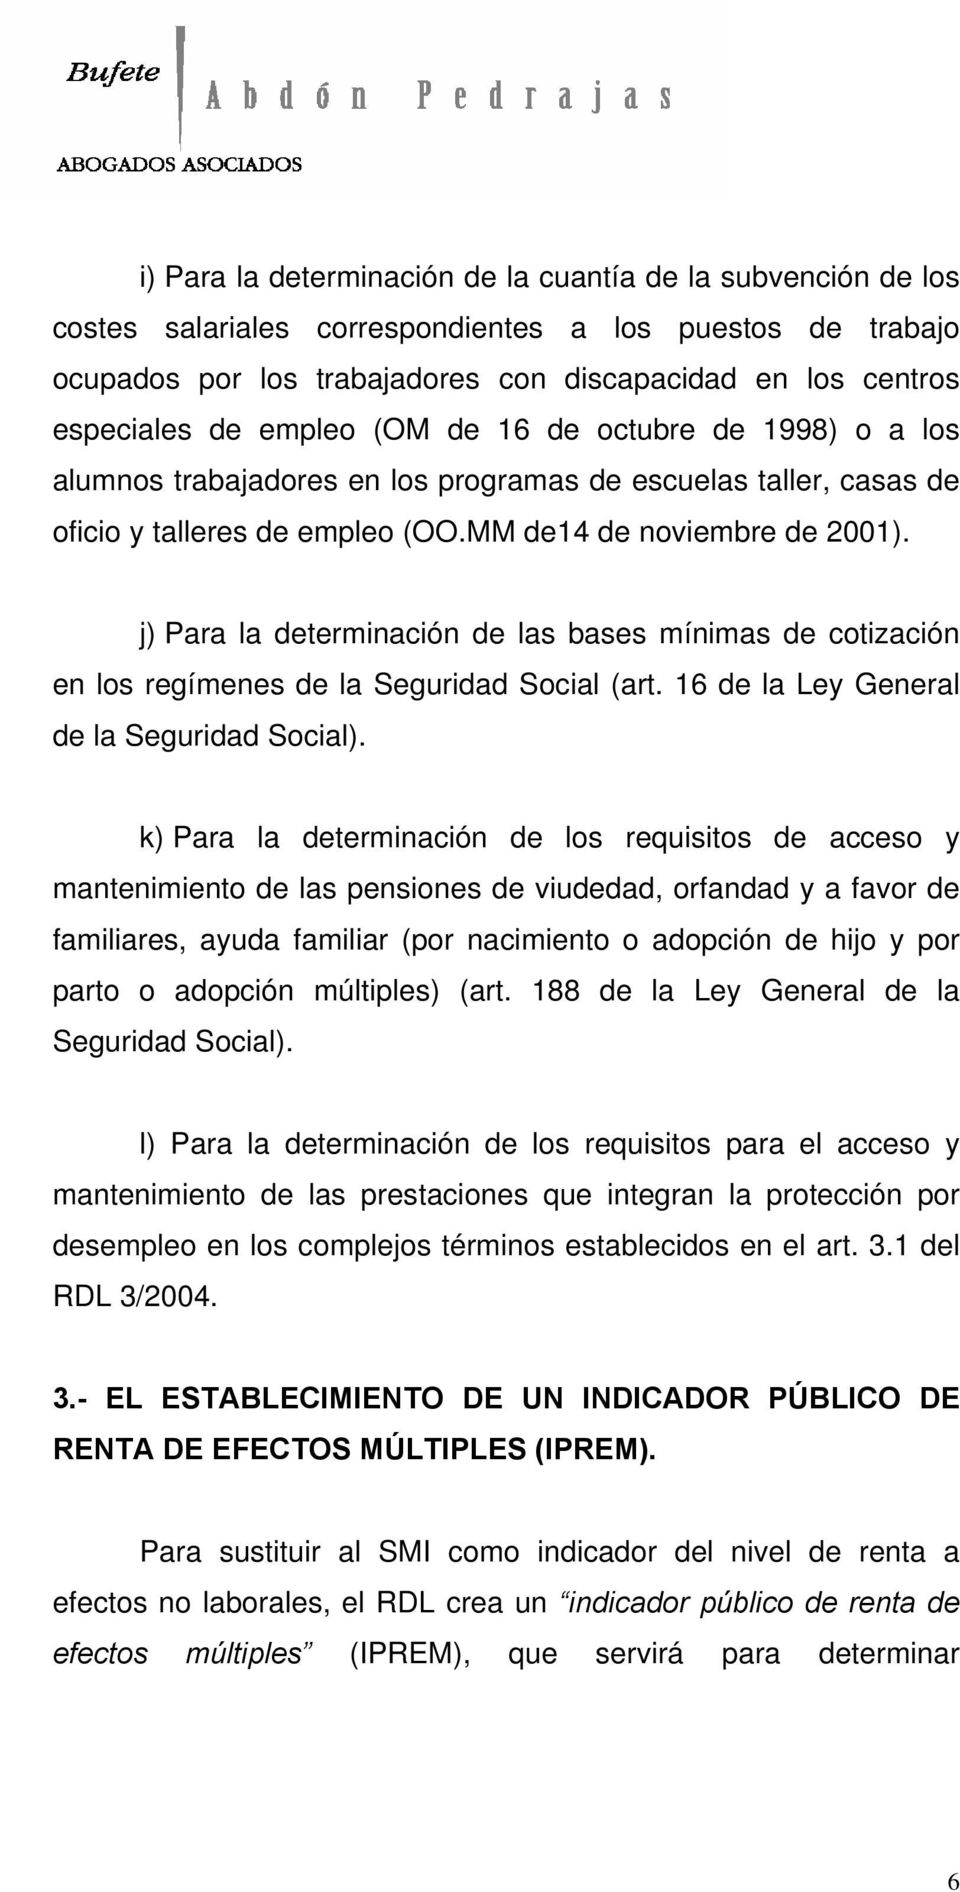 j) Para la determinación de las bases mínimas de cotización en los regímenes de la Seguridad Social (art. 16 de la Ley General de la Seguridad Social).